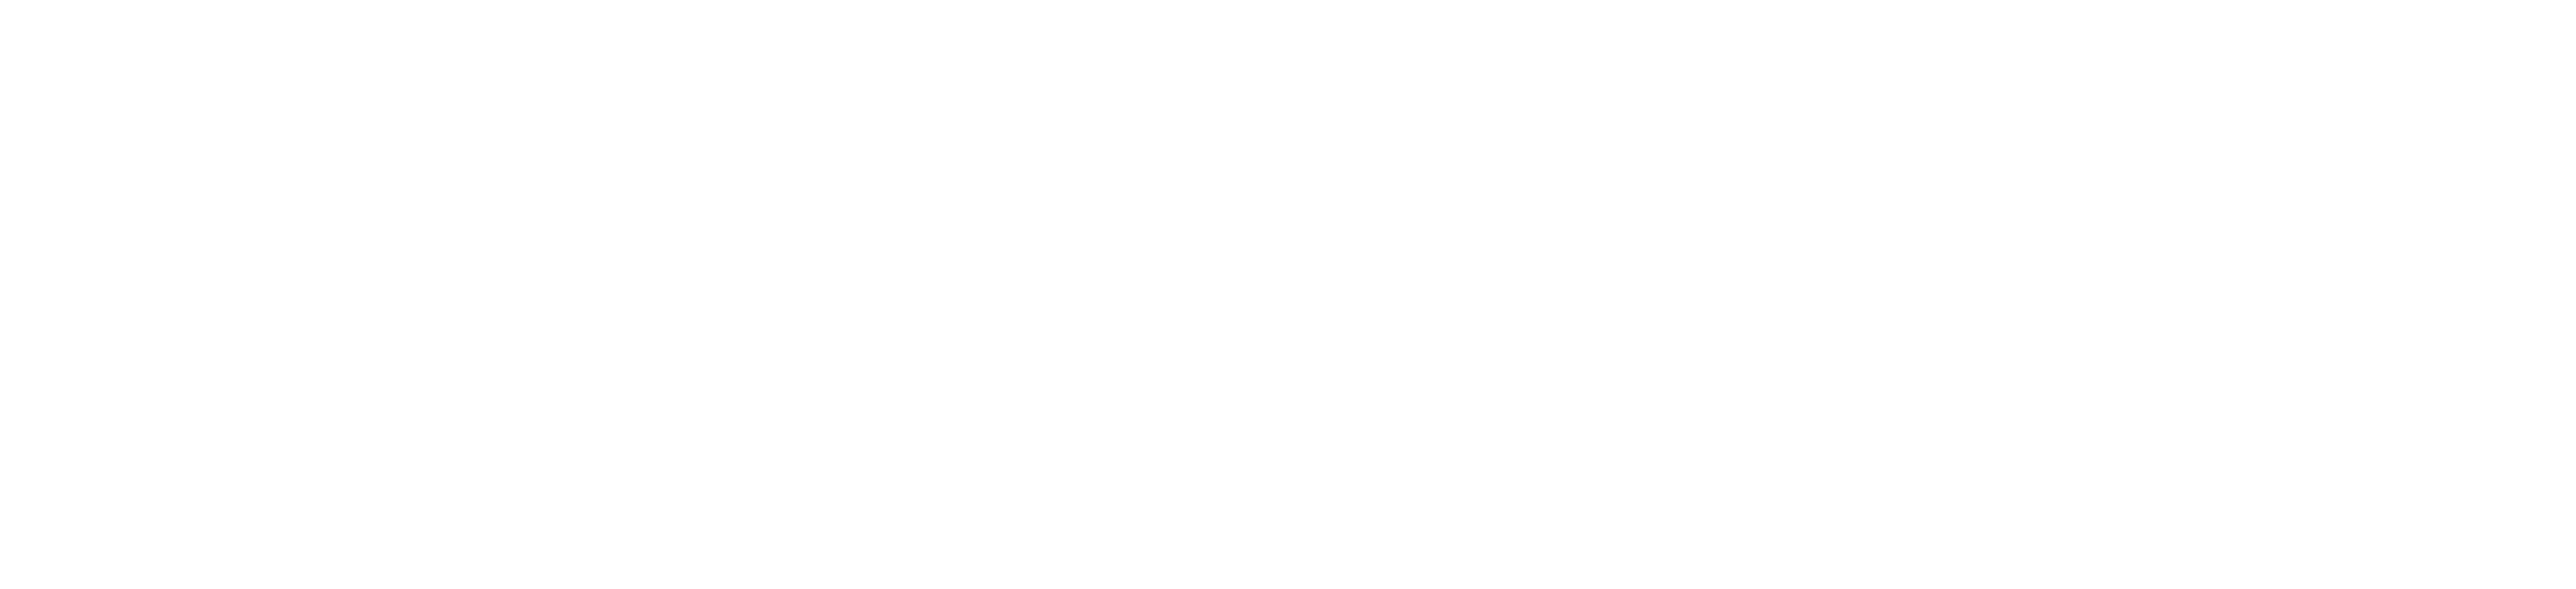 New Jersey State League of Municipalities Logo